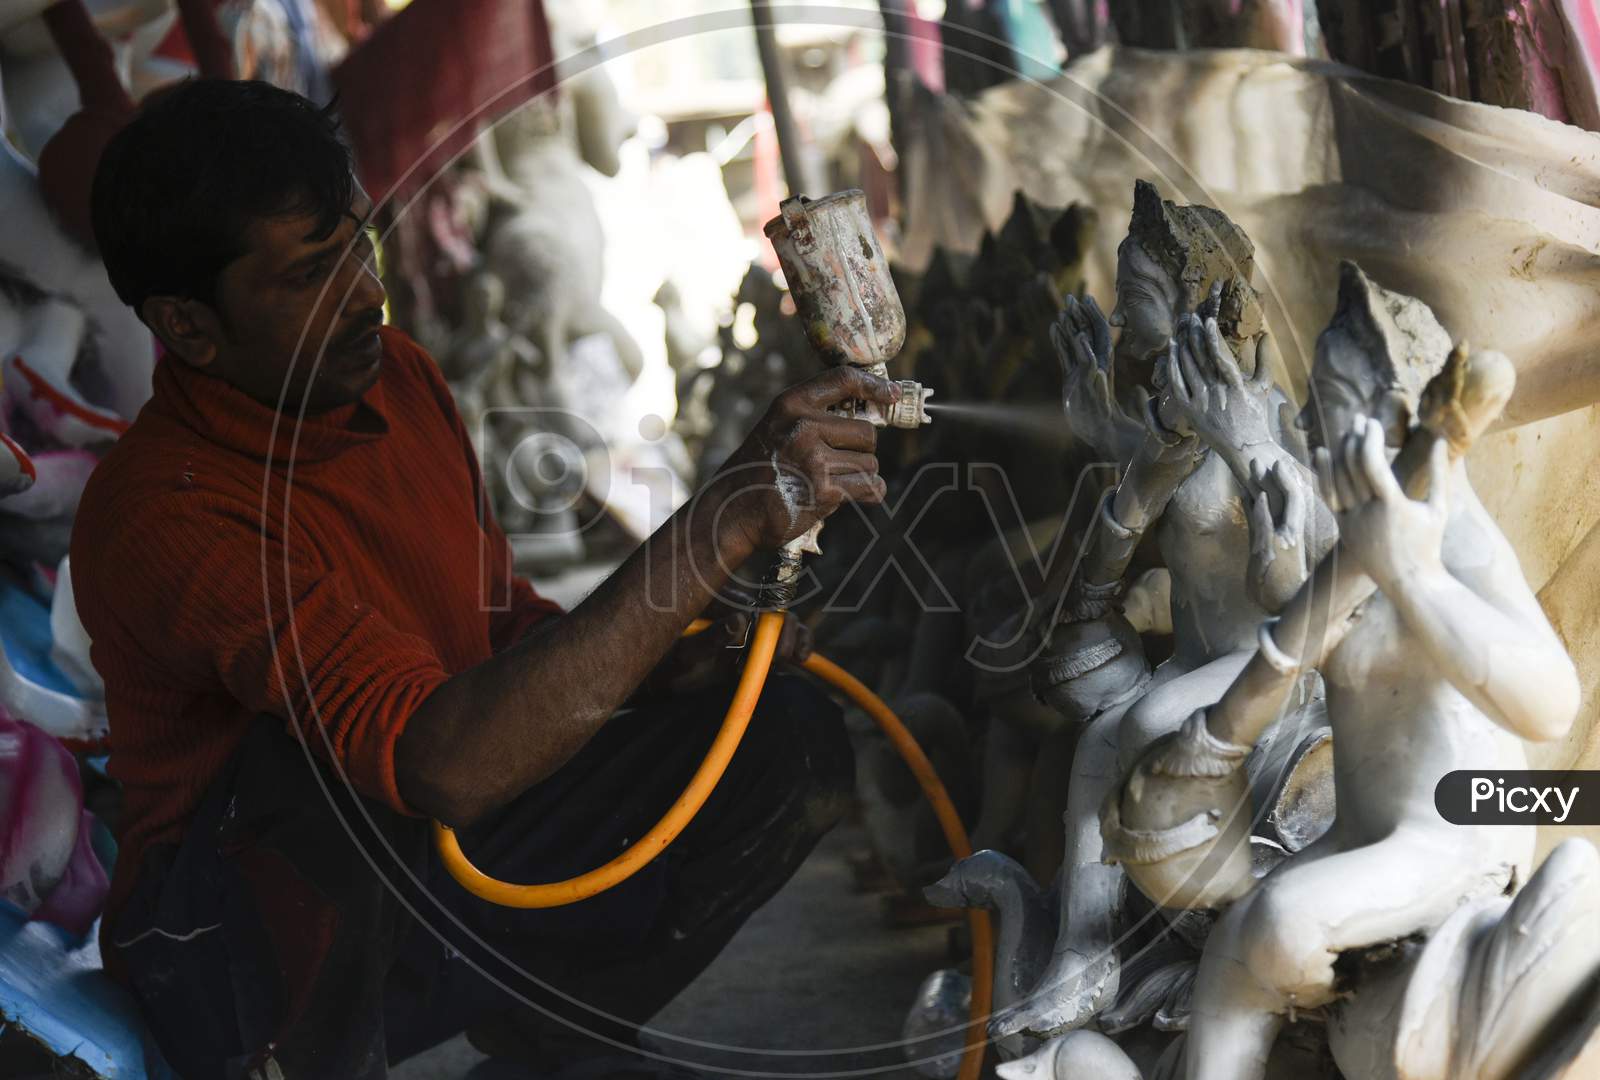 Preparation Of Sawaswati Puja , An Artist Working In Workshop Of Saraswati Idols Ahead Of Saraswati Puja, In Guwahati